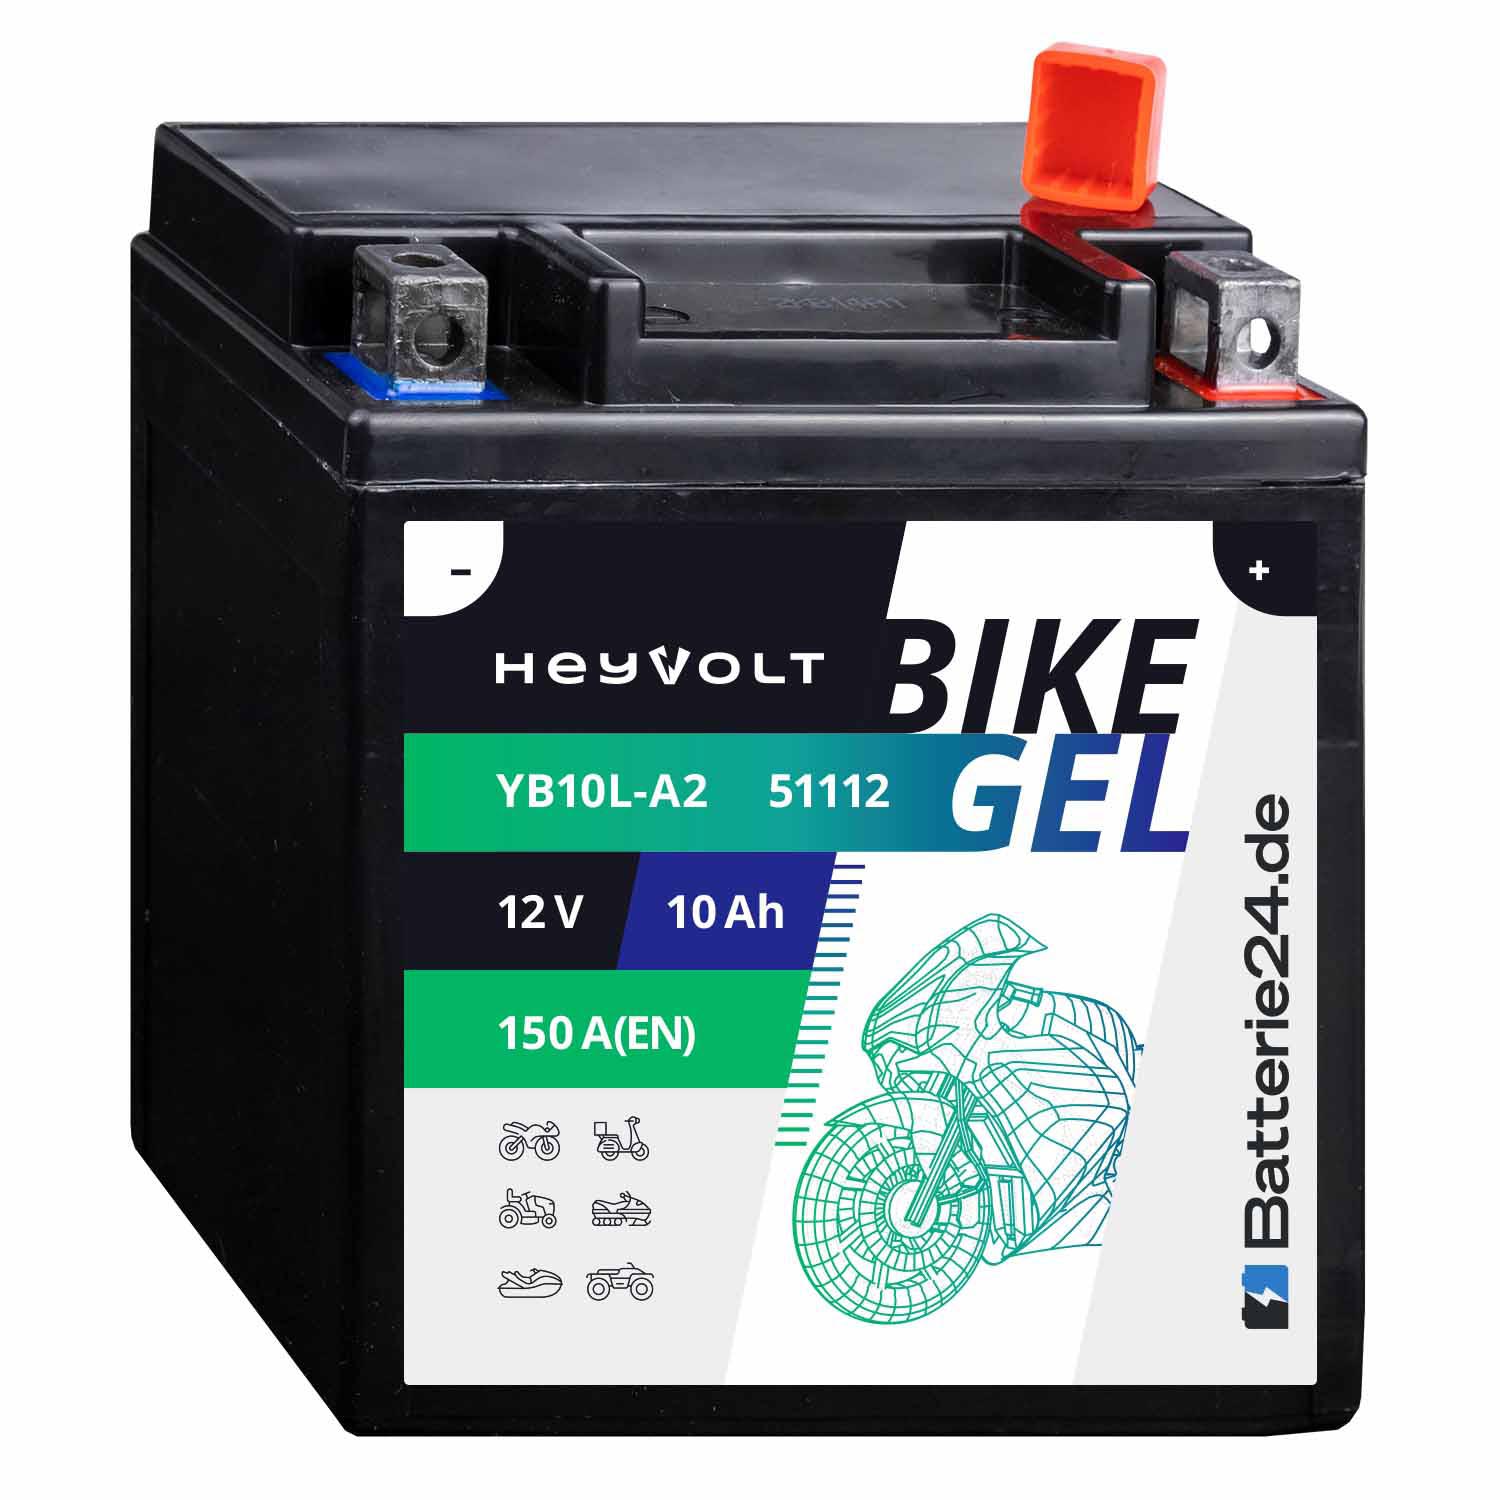 HeyVolt BIKE GEL Motorradbatterie YB10L-A2 51112 12V 10Ah